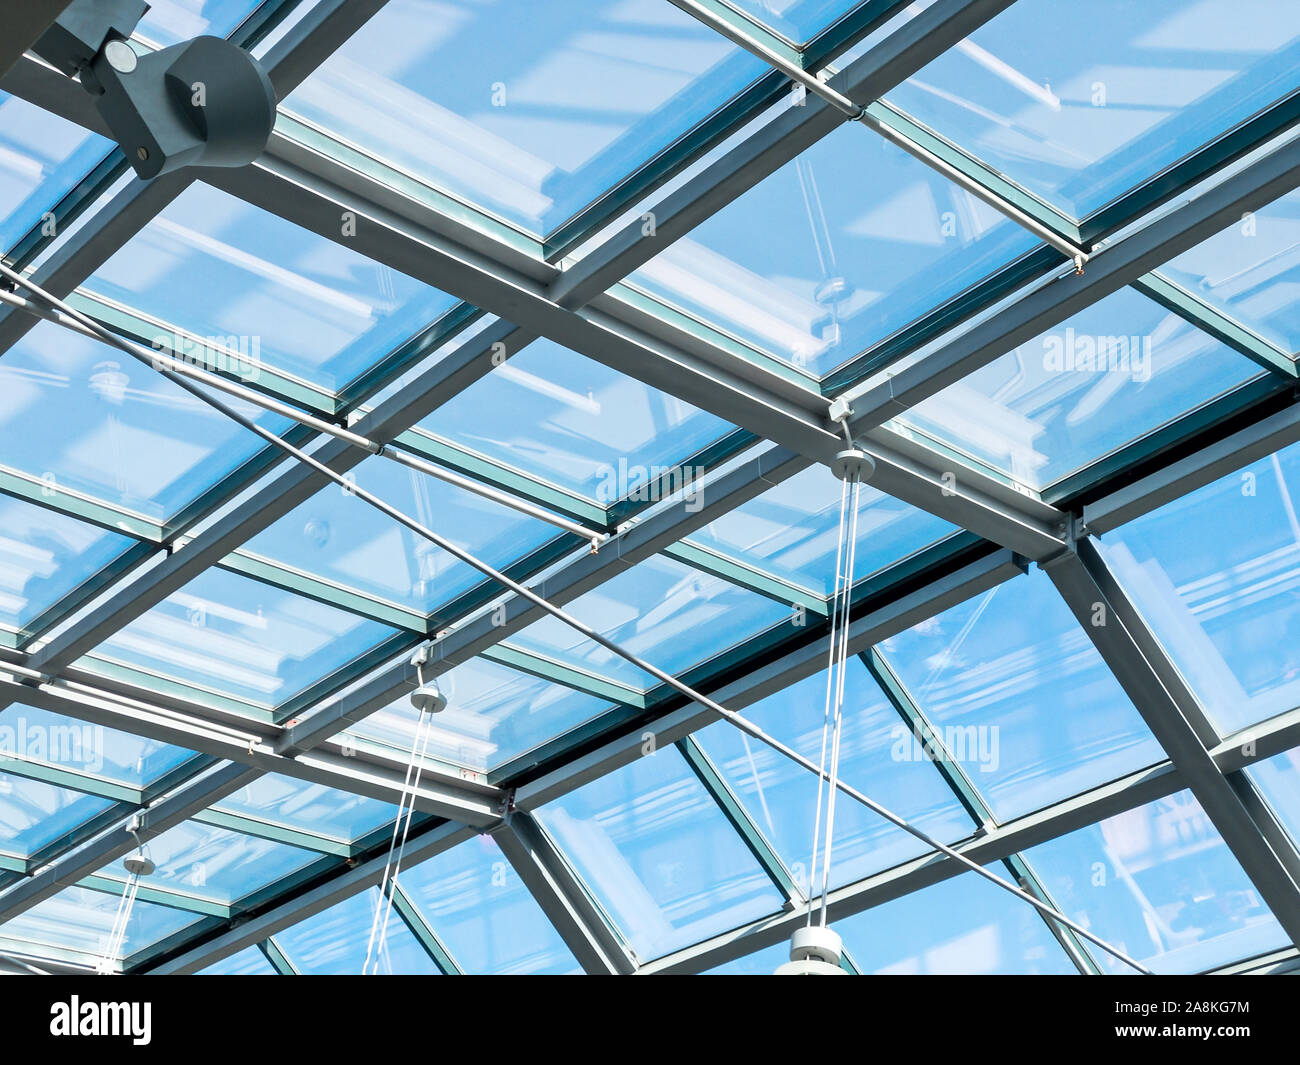 closeup inside view of modern transparent glass roof. blue sky through a glass ceiling Stock Photo